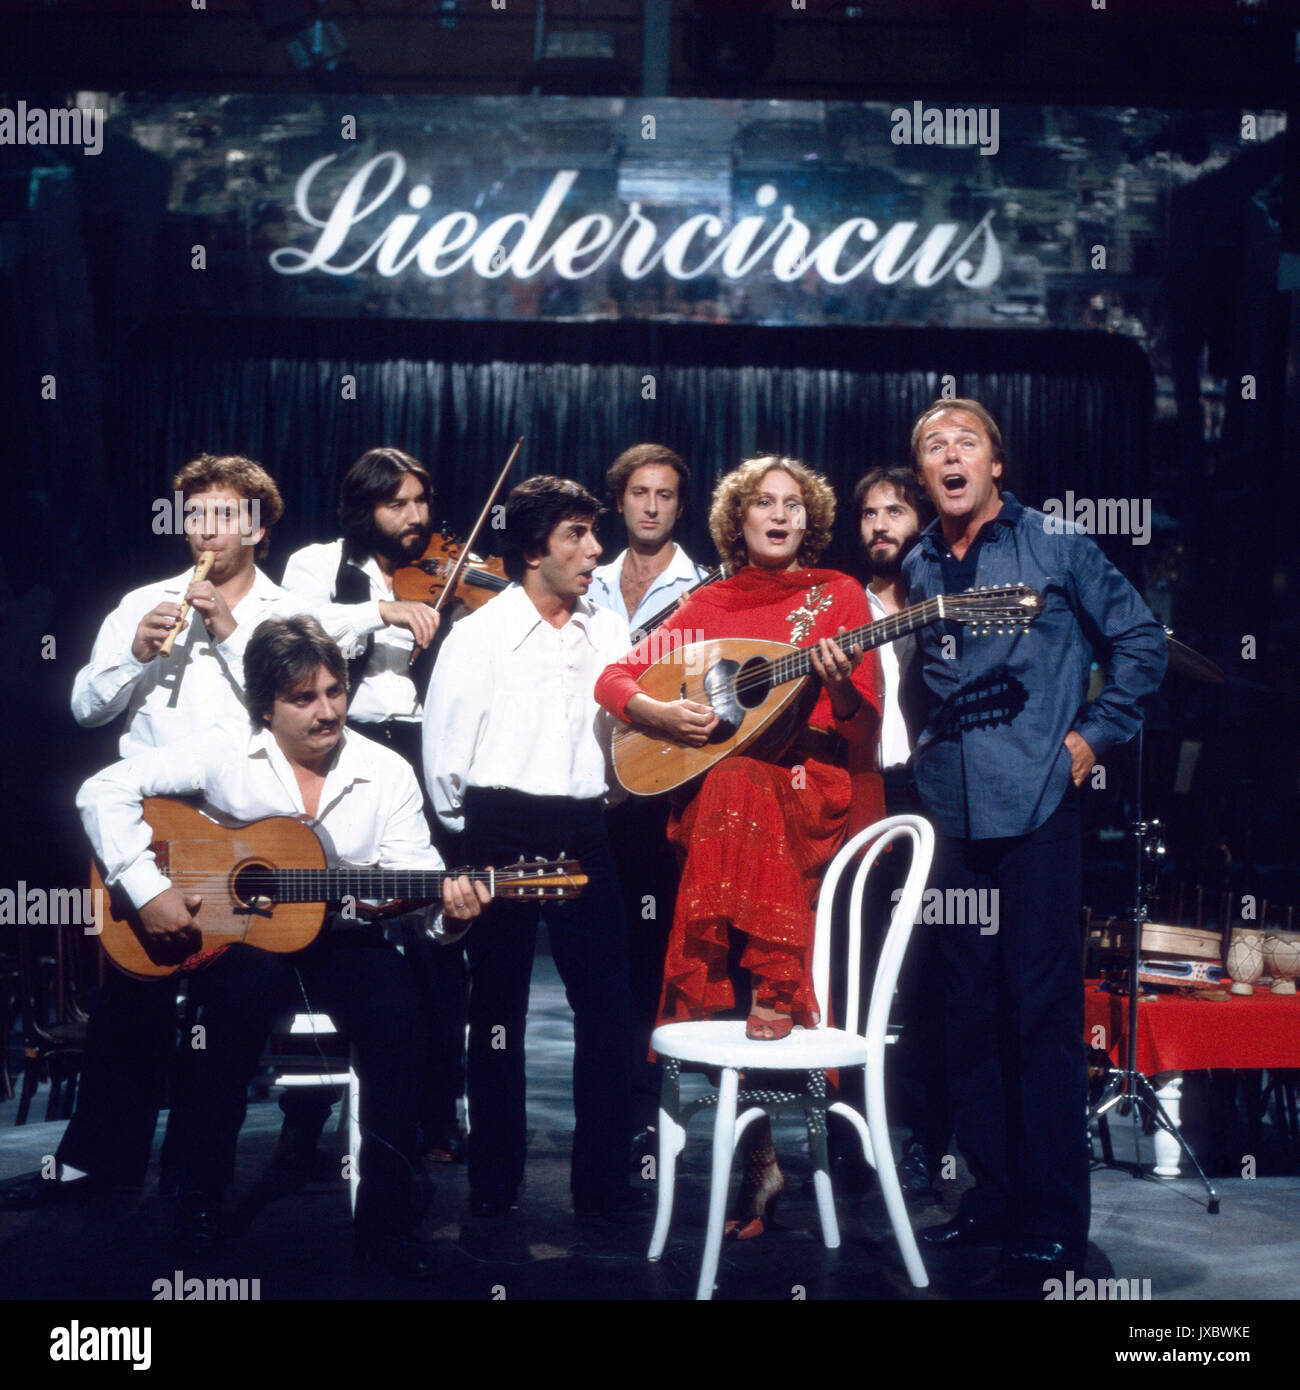 Die neapolitanische Gruppe N.C.C.P. zu Gast im 'Liedercircus', Deutschland 1980er Jahre. Neapolitan band N.C.C.P. performing at the show 'Liedercircus', Germany 1980s. Stock Photo